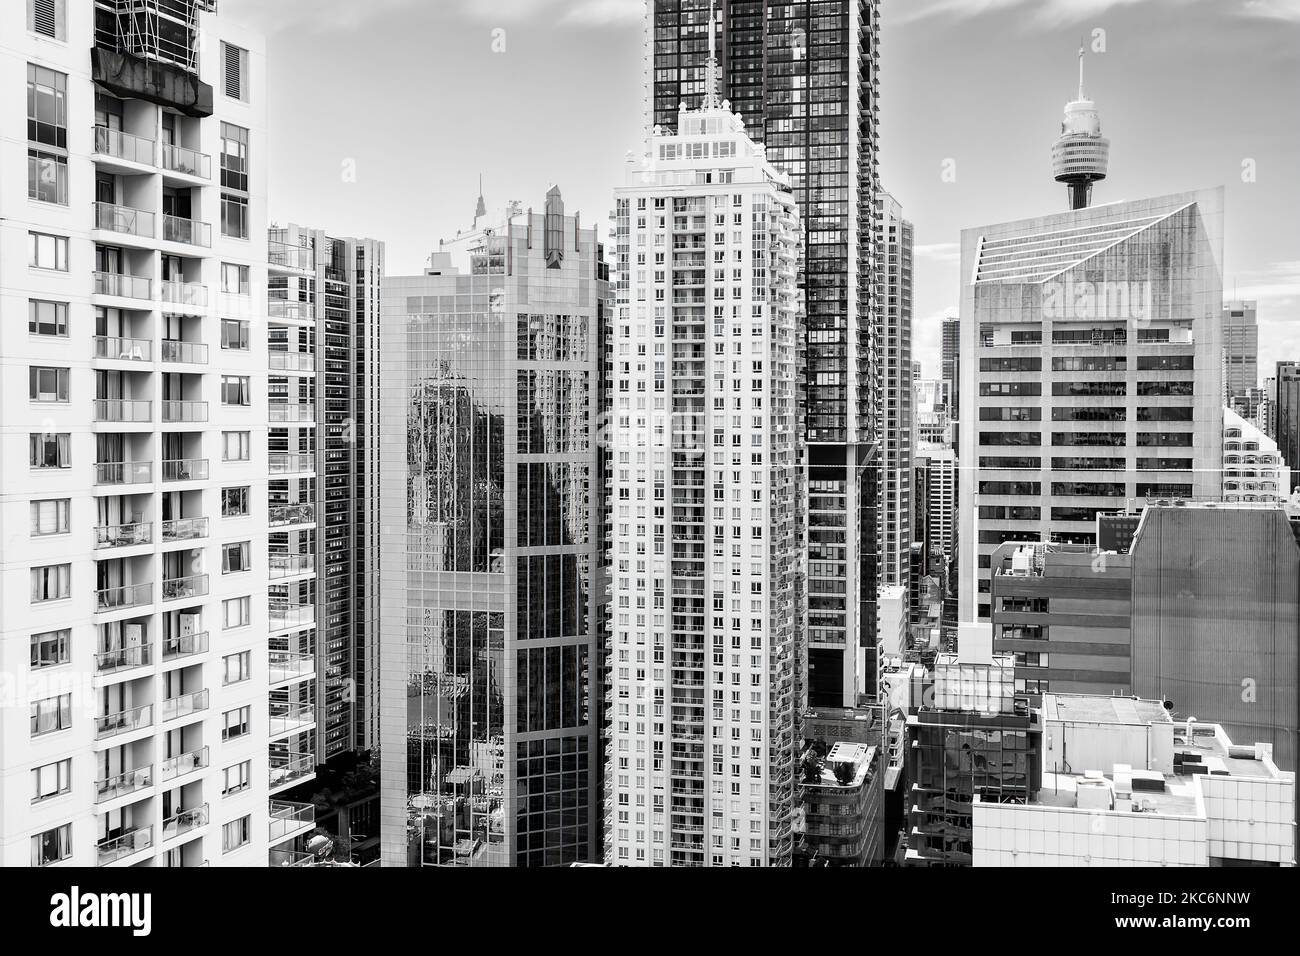 Schwarz-weiße Hochhäuser für Geschäfts- und Wohnhäuser im zentralen geschäftsviertel der Stadt Sydney stehen in einem Kontrast zur Höhe der Luft. Stockfoto